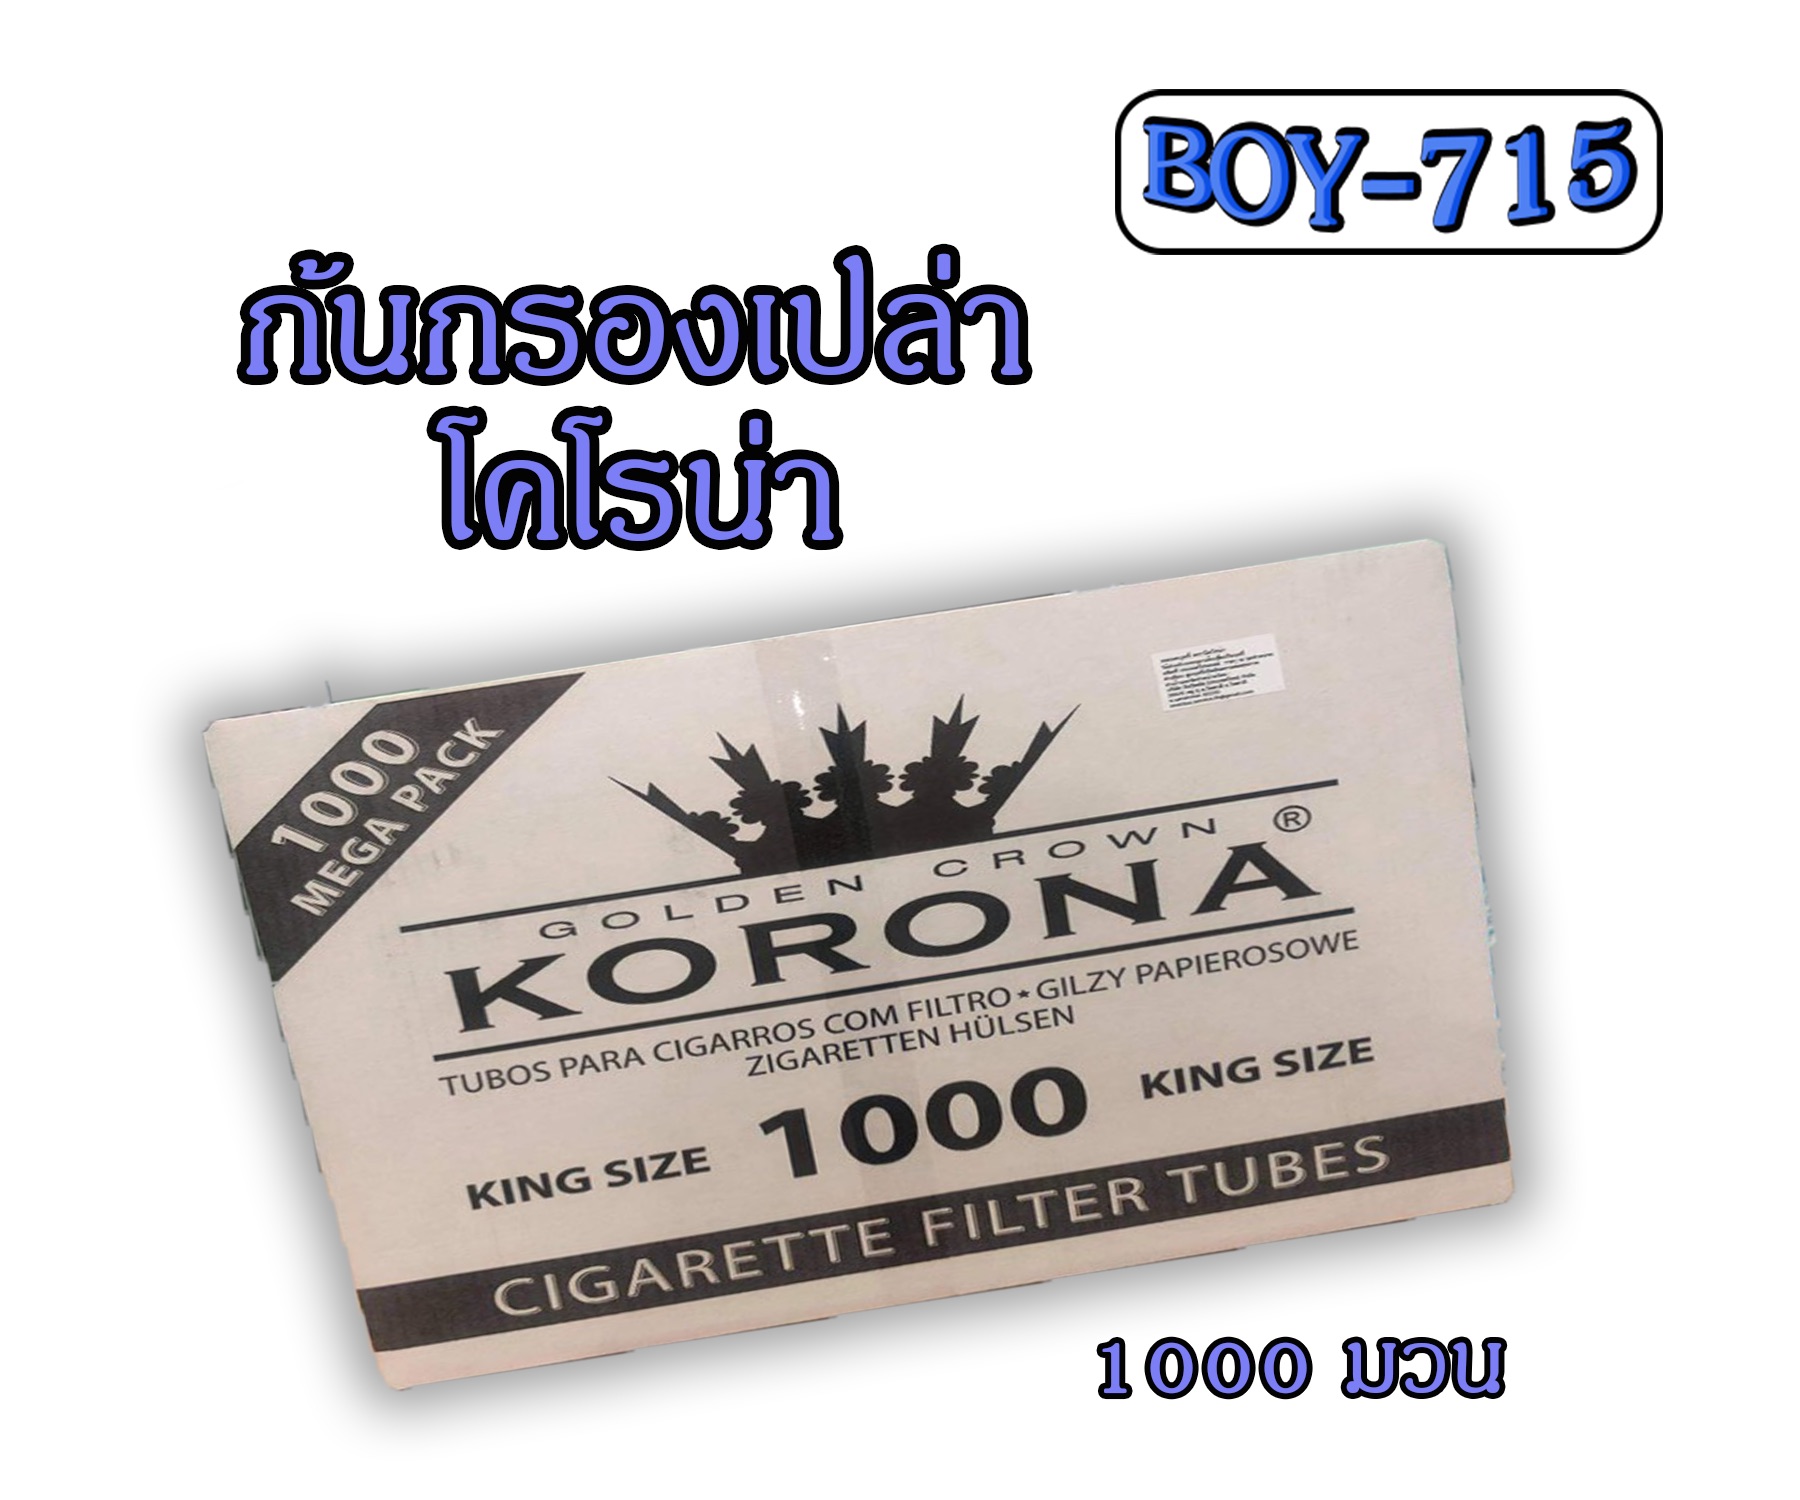 ก้นกรองเปล่า KORONA  1000 มวน แบบร้อน กรองยาว15 มม.